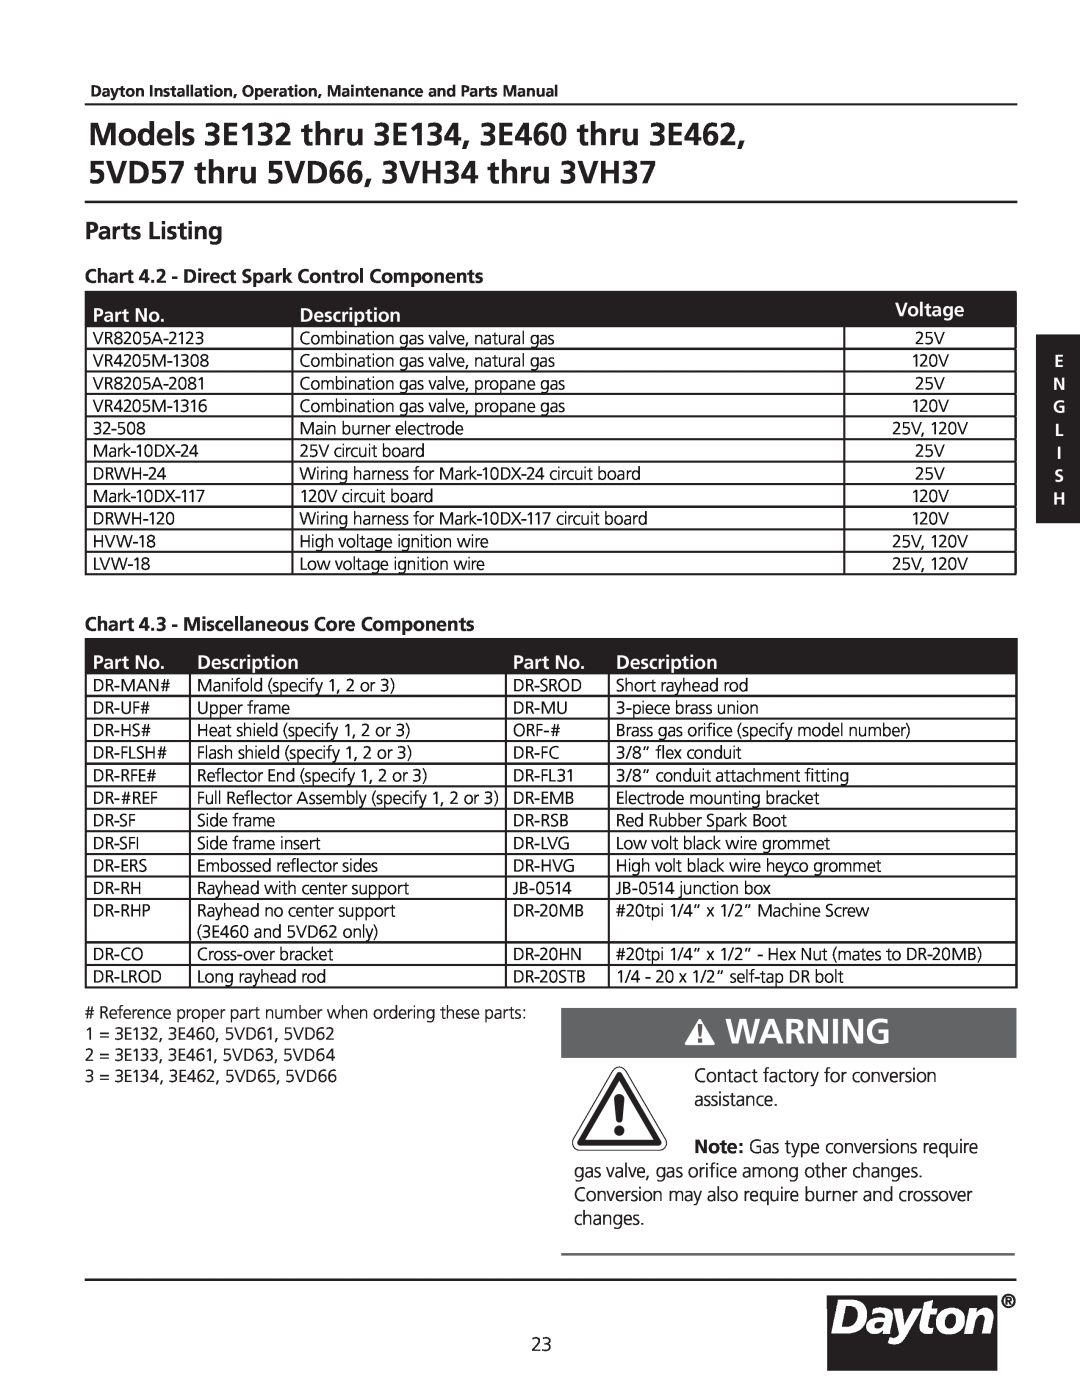 Dayton 5VD57, 3VH34, 3VH37, 3.00E+134, 3E462 Parts Listing, Chart 4.2 - Direct Spark Control Components, Description, Voltage 